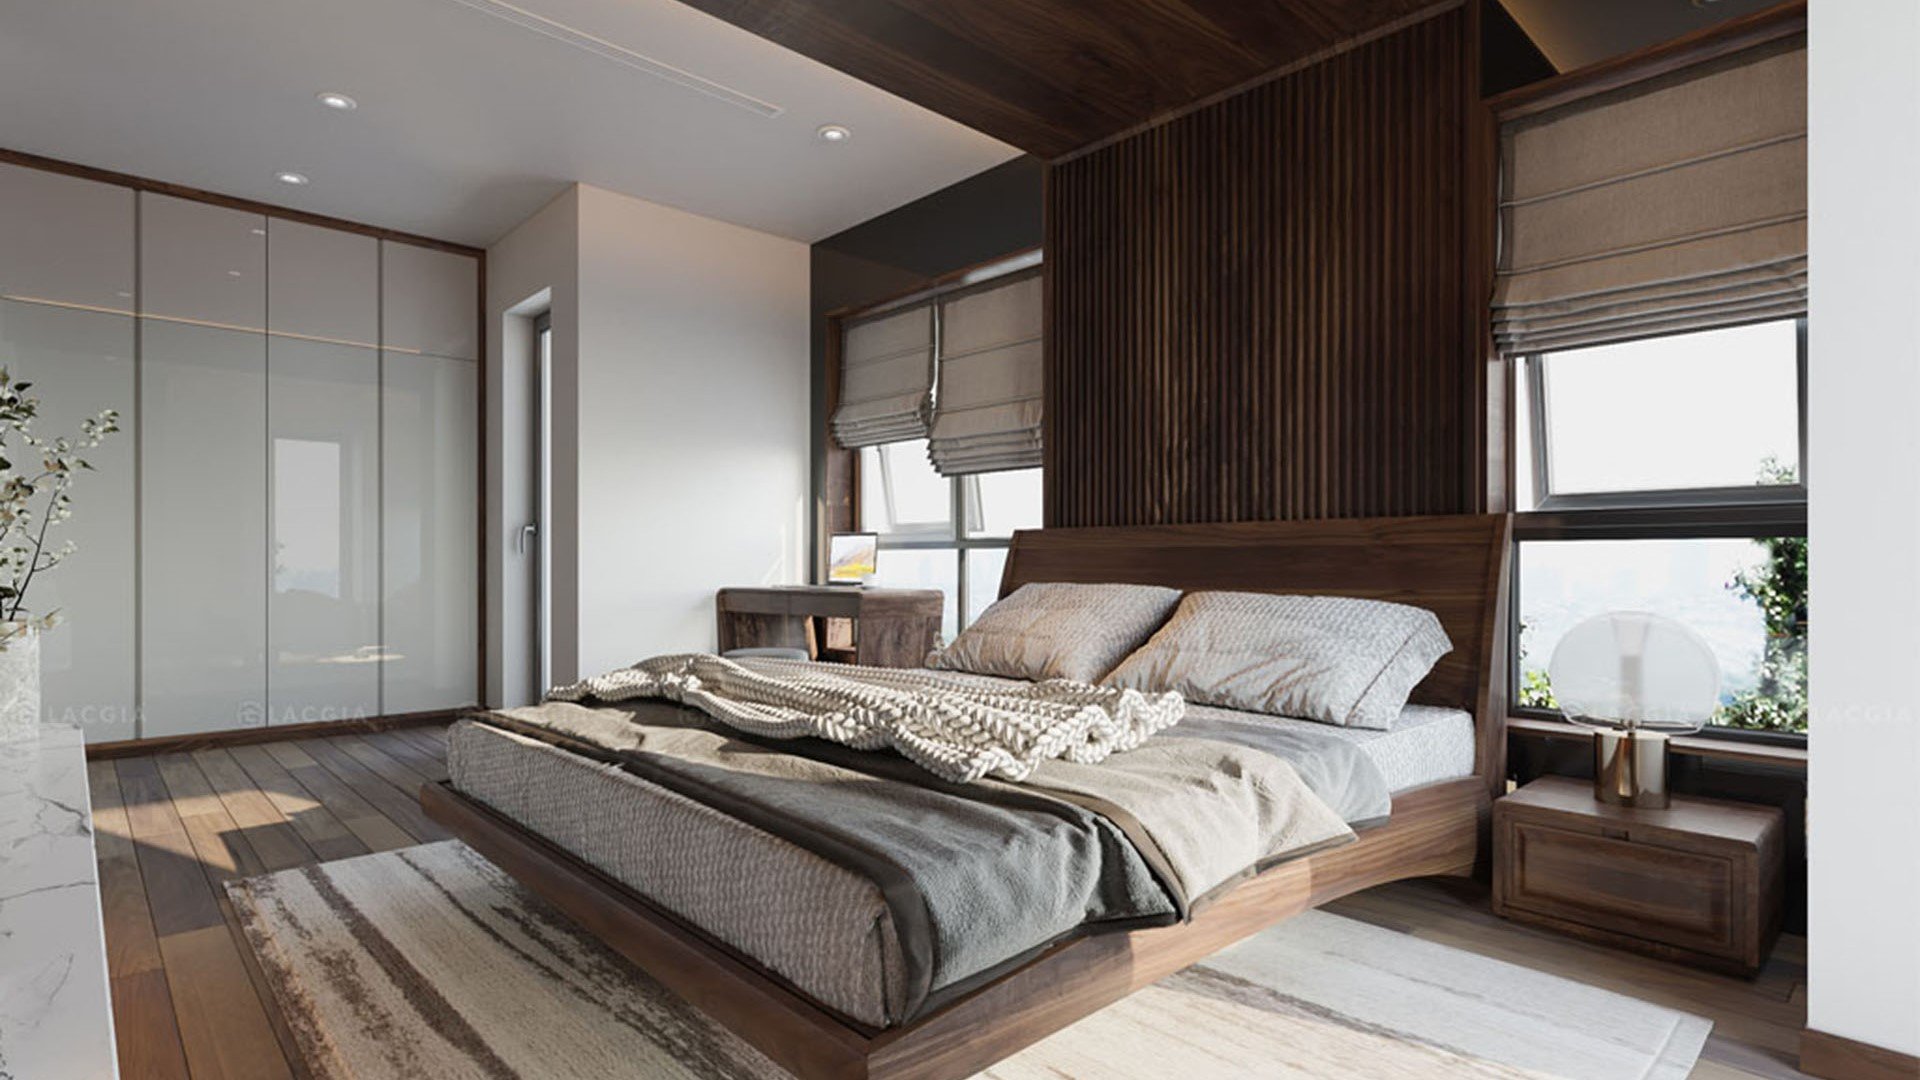 Thiết kế nội thất phòng ngủ master là sự lựa chọn hoàn hảo cho những người coi trọng sự tiện nghi mà vẫn giữ được đẳng cấp và phong cách. Với màu trầm, các chi tiết tinh tế và đầy đủ tiện nghi, phòng ngủ sẽ giúp bạn tìm thấy sự yên bình và động lực mới để khởi đầu mỗi ngày.